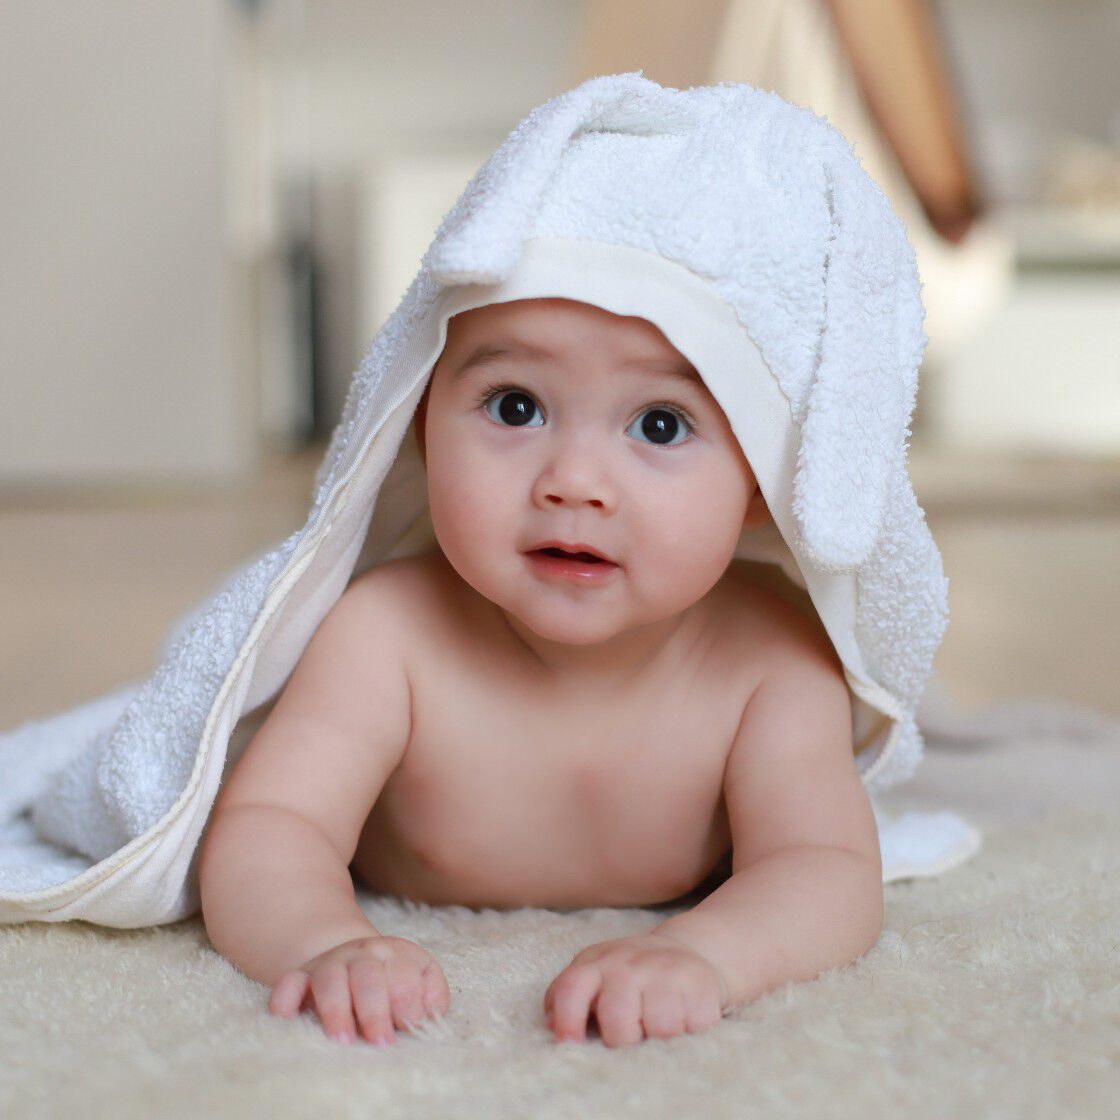 Tìm hiểu về bệnh chàm sữa ở trẻ em | Cetaphil VN